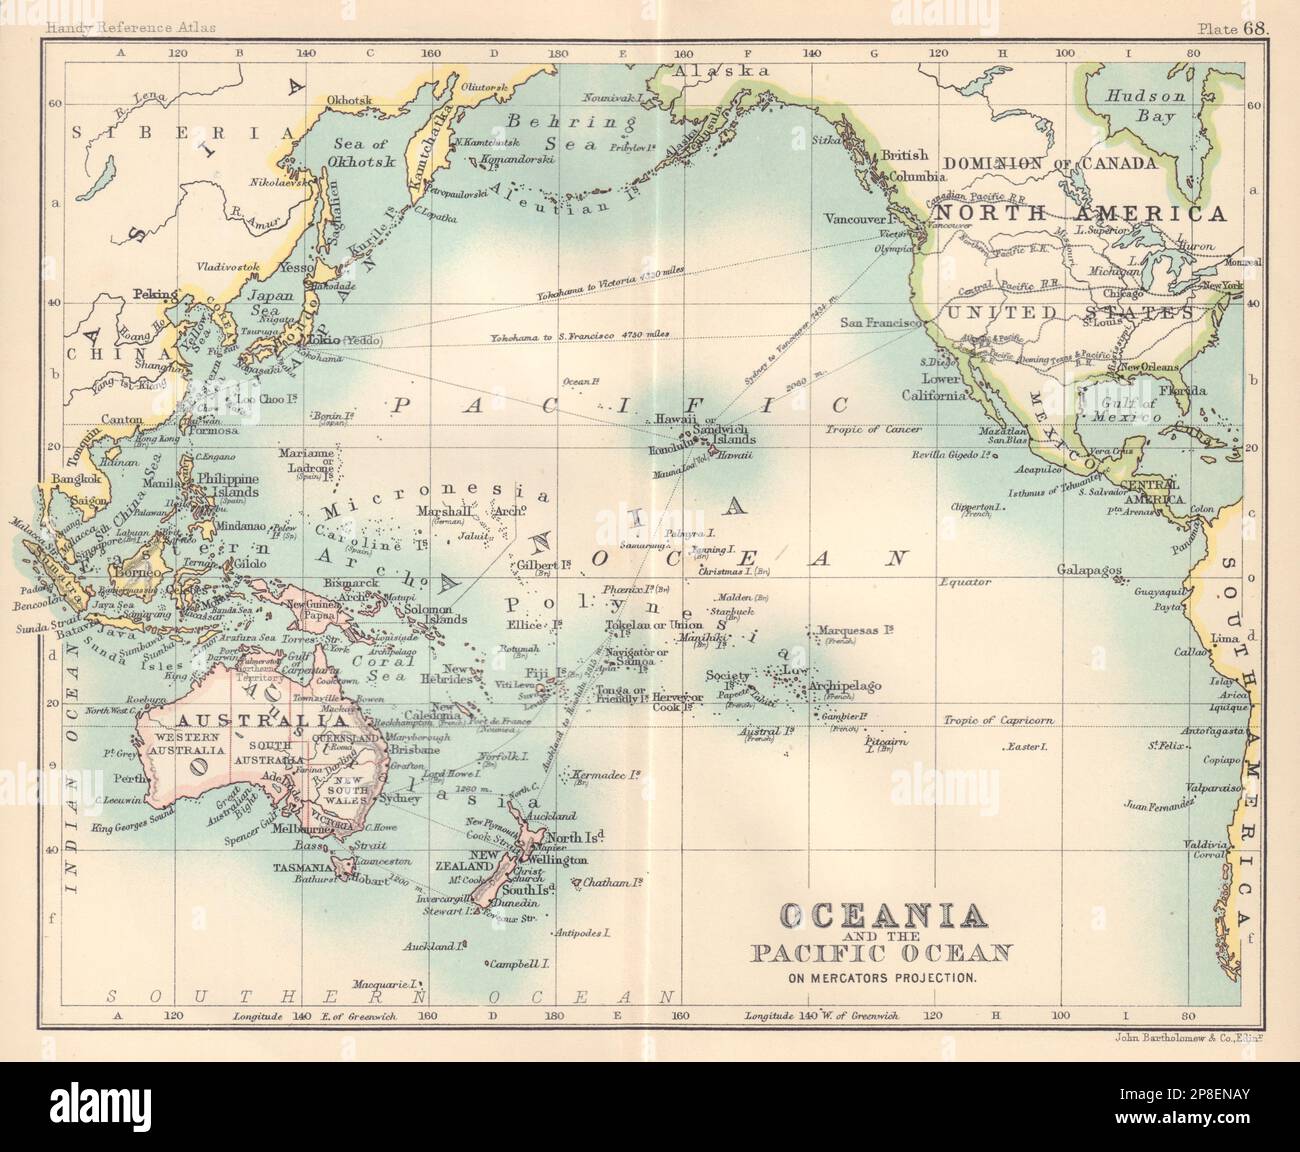 Ozeanien und der Pazifik auf Mercators Projektion. Karte Australasia 1898 Stockfoto